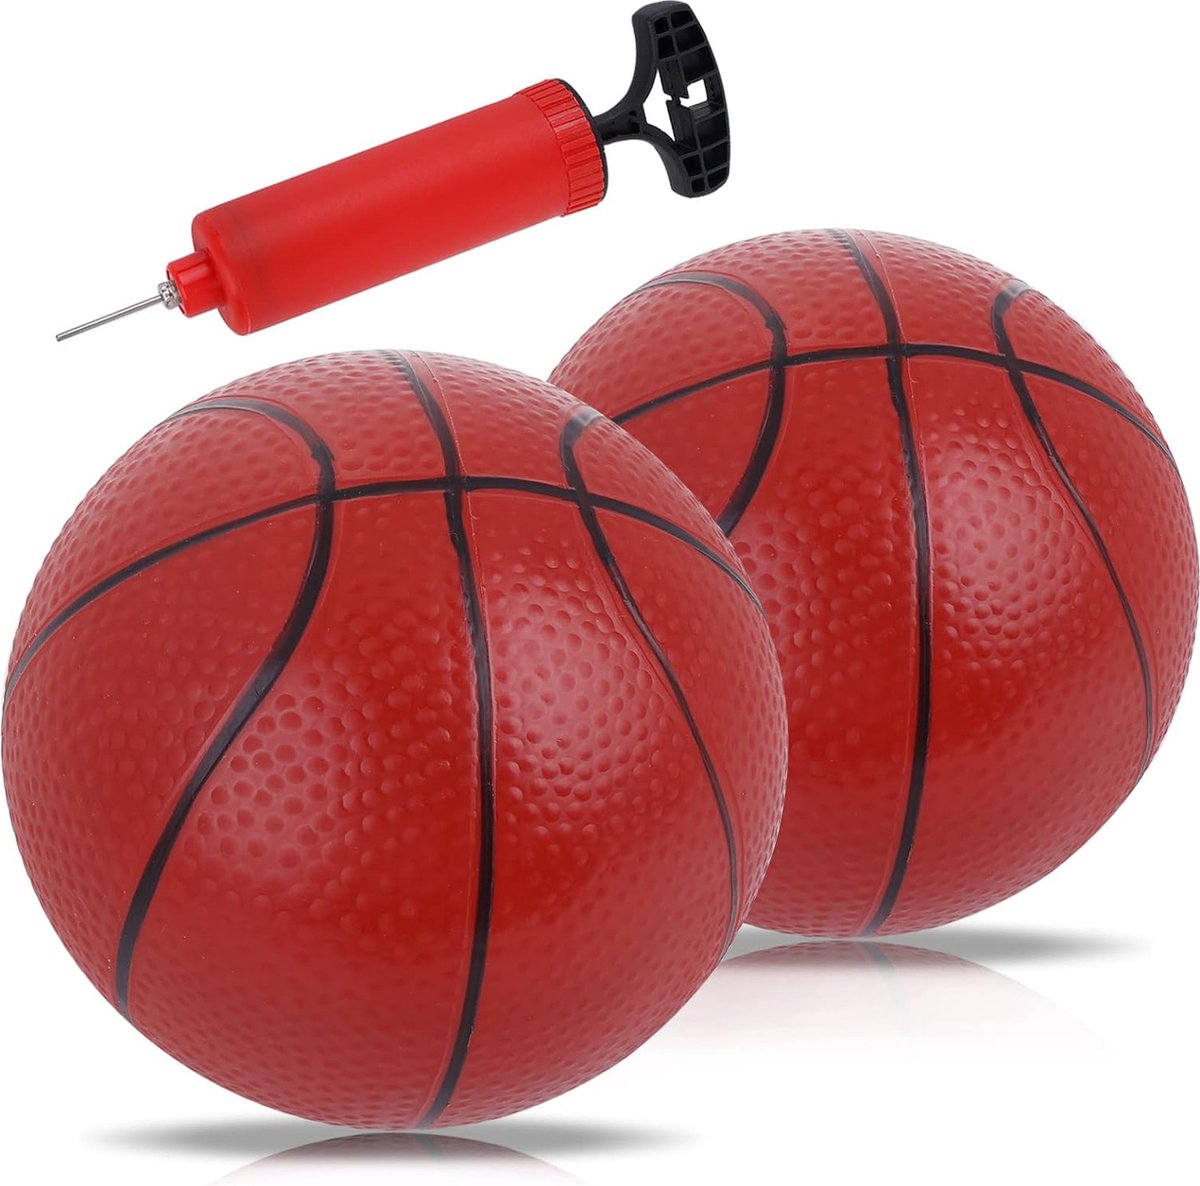 Opblaasbare Mini Basketbal Set met Twee Basketballen - Indoor en Outdoor Speelgoed voor Kinderen en Volwassenen - Compact en Draagbaar - Inclusief Handpomp - Ayangoods